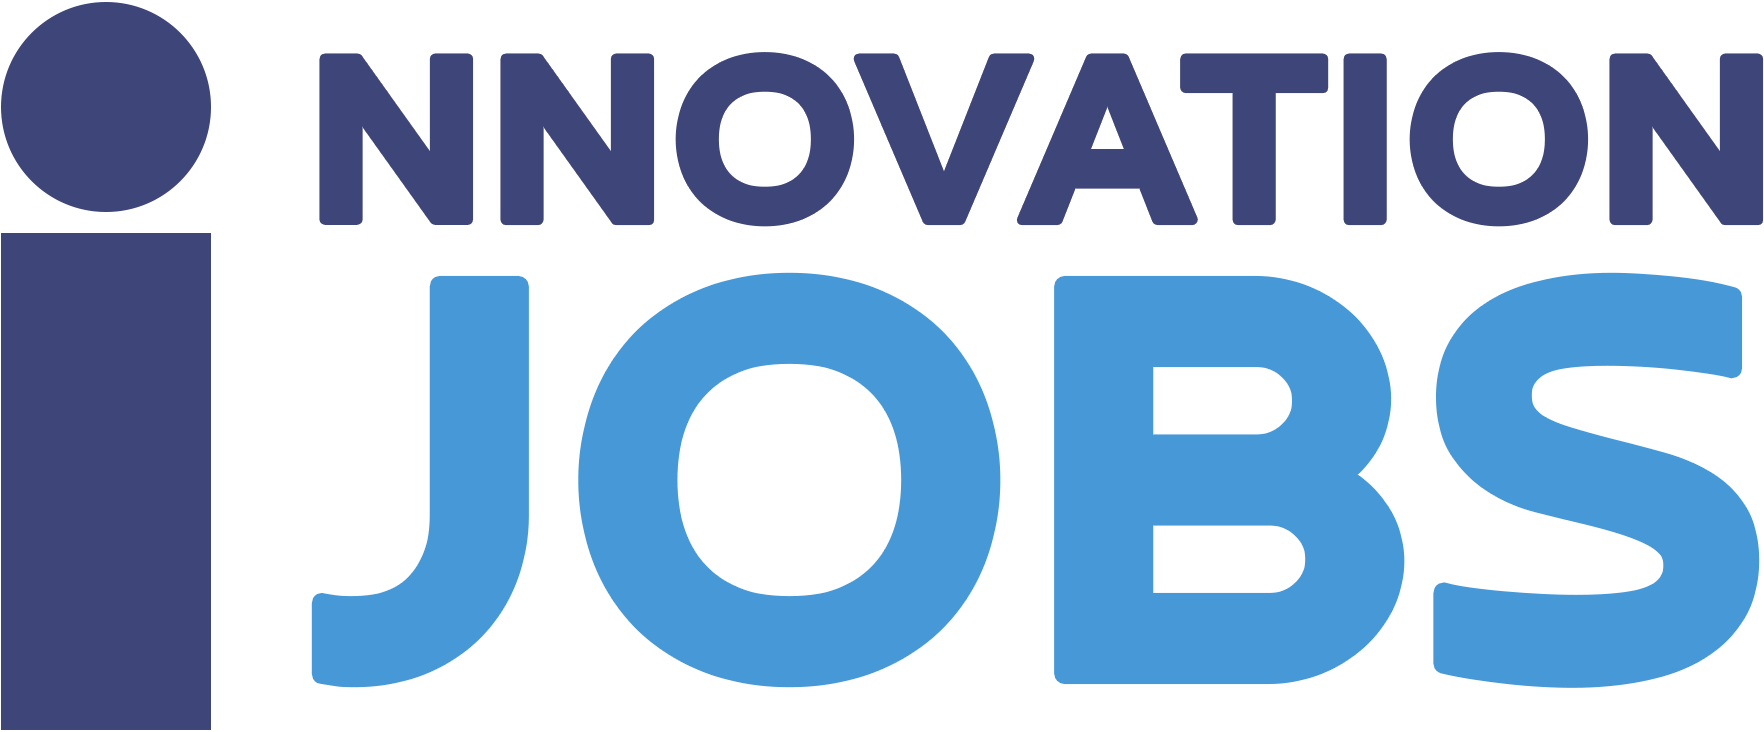 Innovationjobs